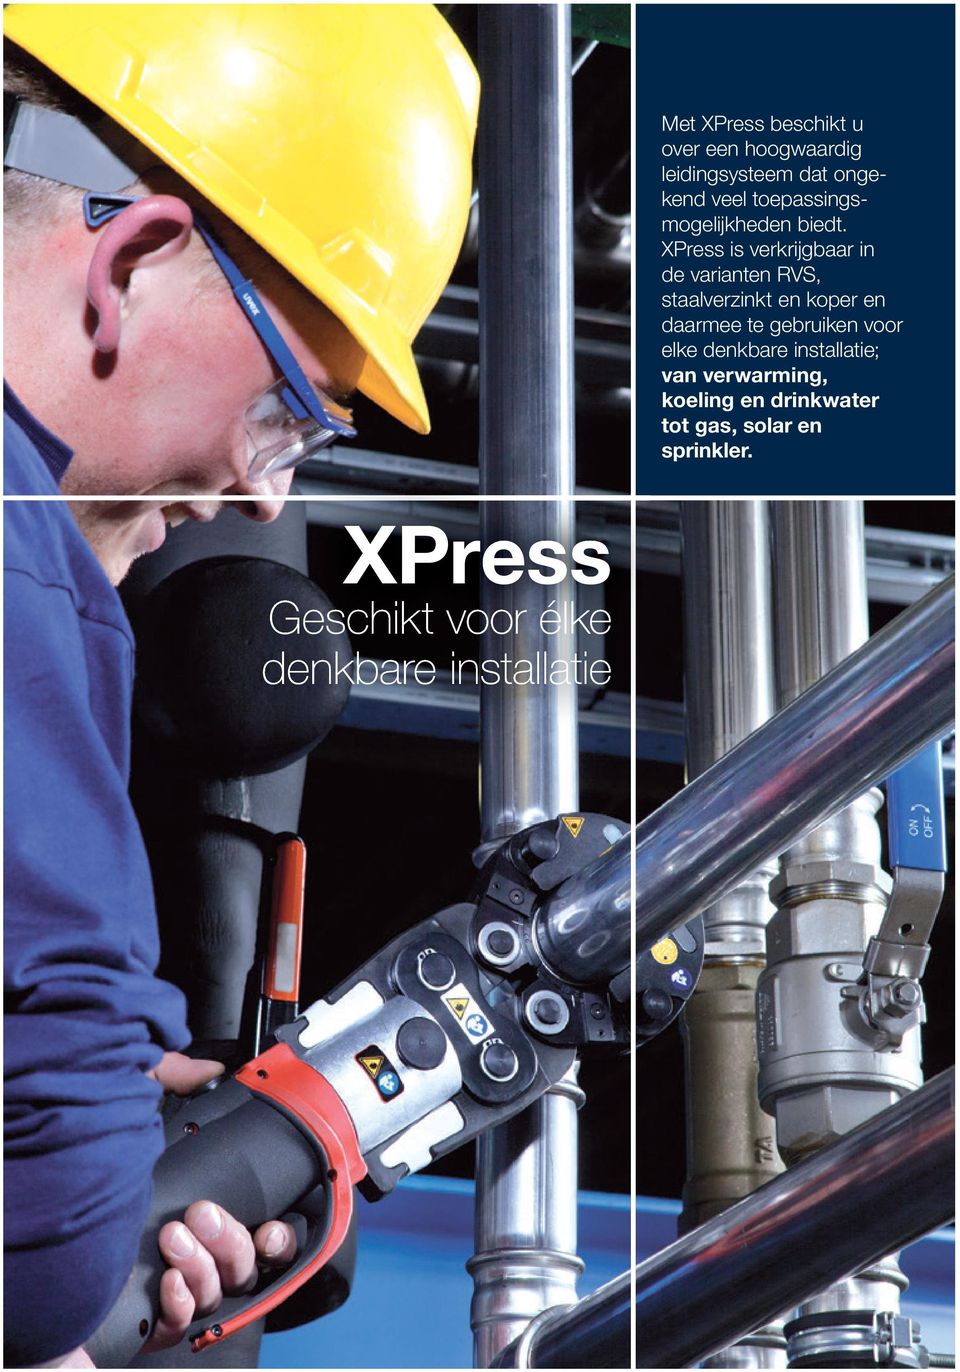 XPress is verkrijgbaar in de varianten RVS, staalverzinkt en koper en daarmee te